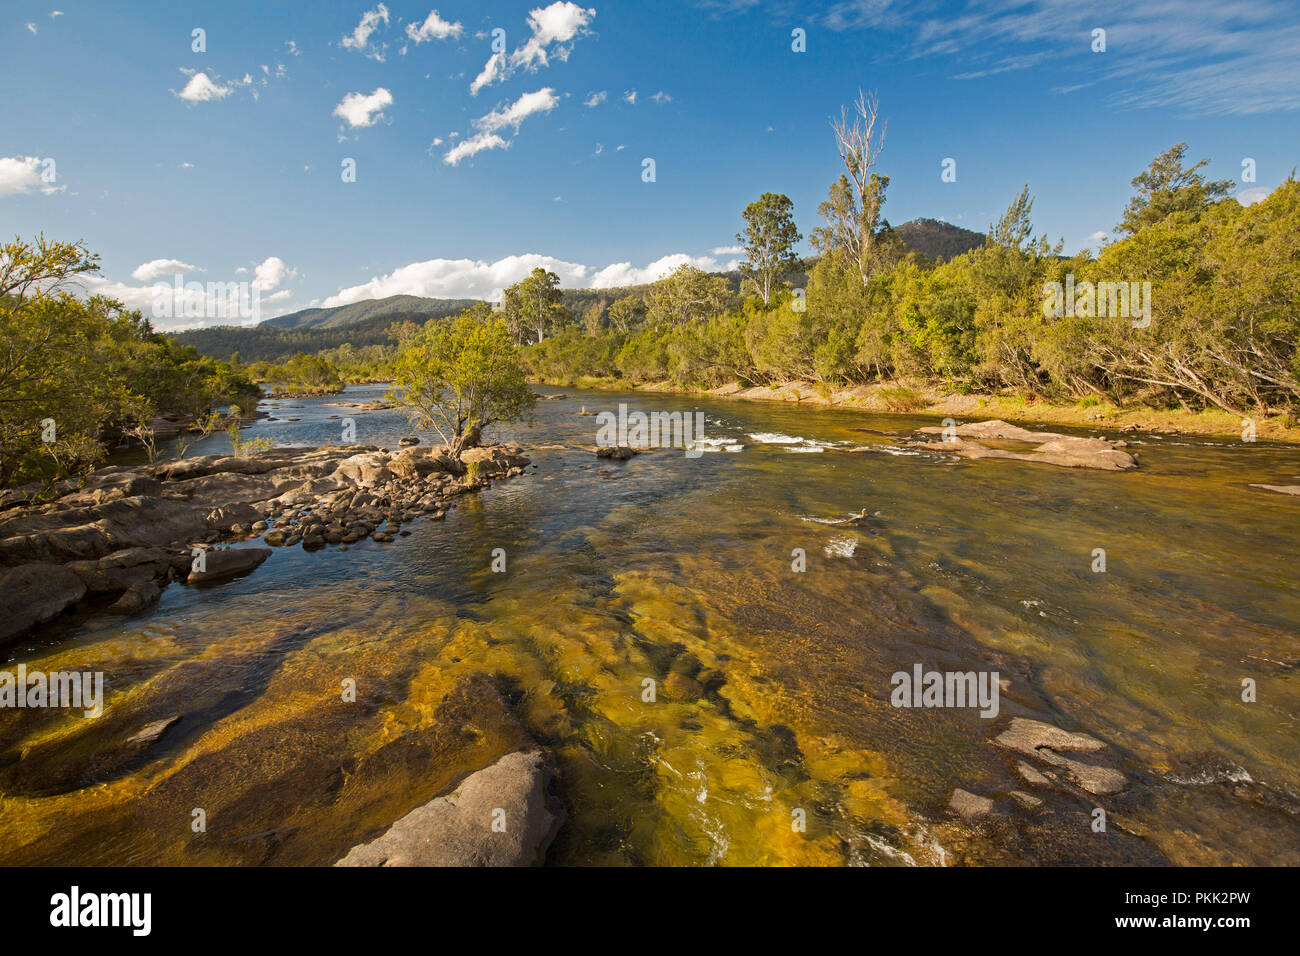 Incredibile paesaggio australiano con rock disseminata blu delle acque del fiume Mann orlate da foreste a piedi di intervalli sotto il cielo blu con flecks del cloud - NSW Foto Stock